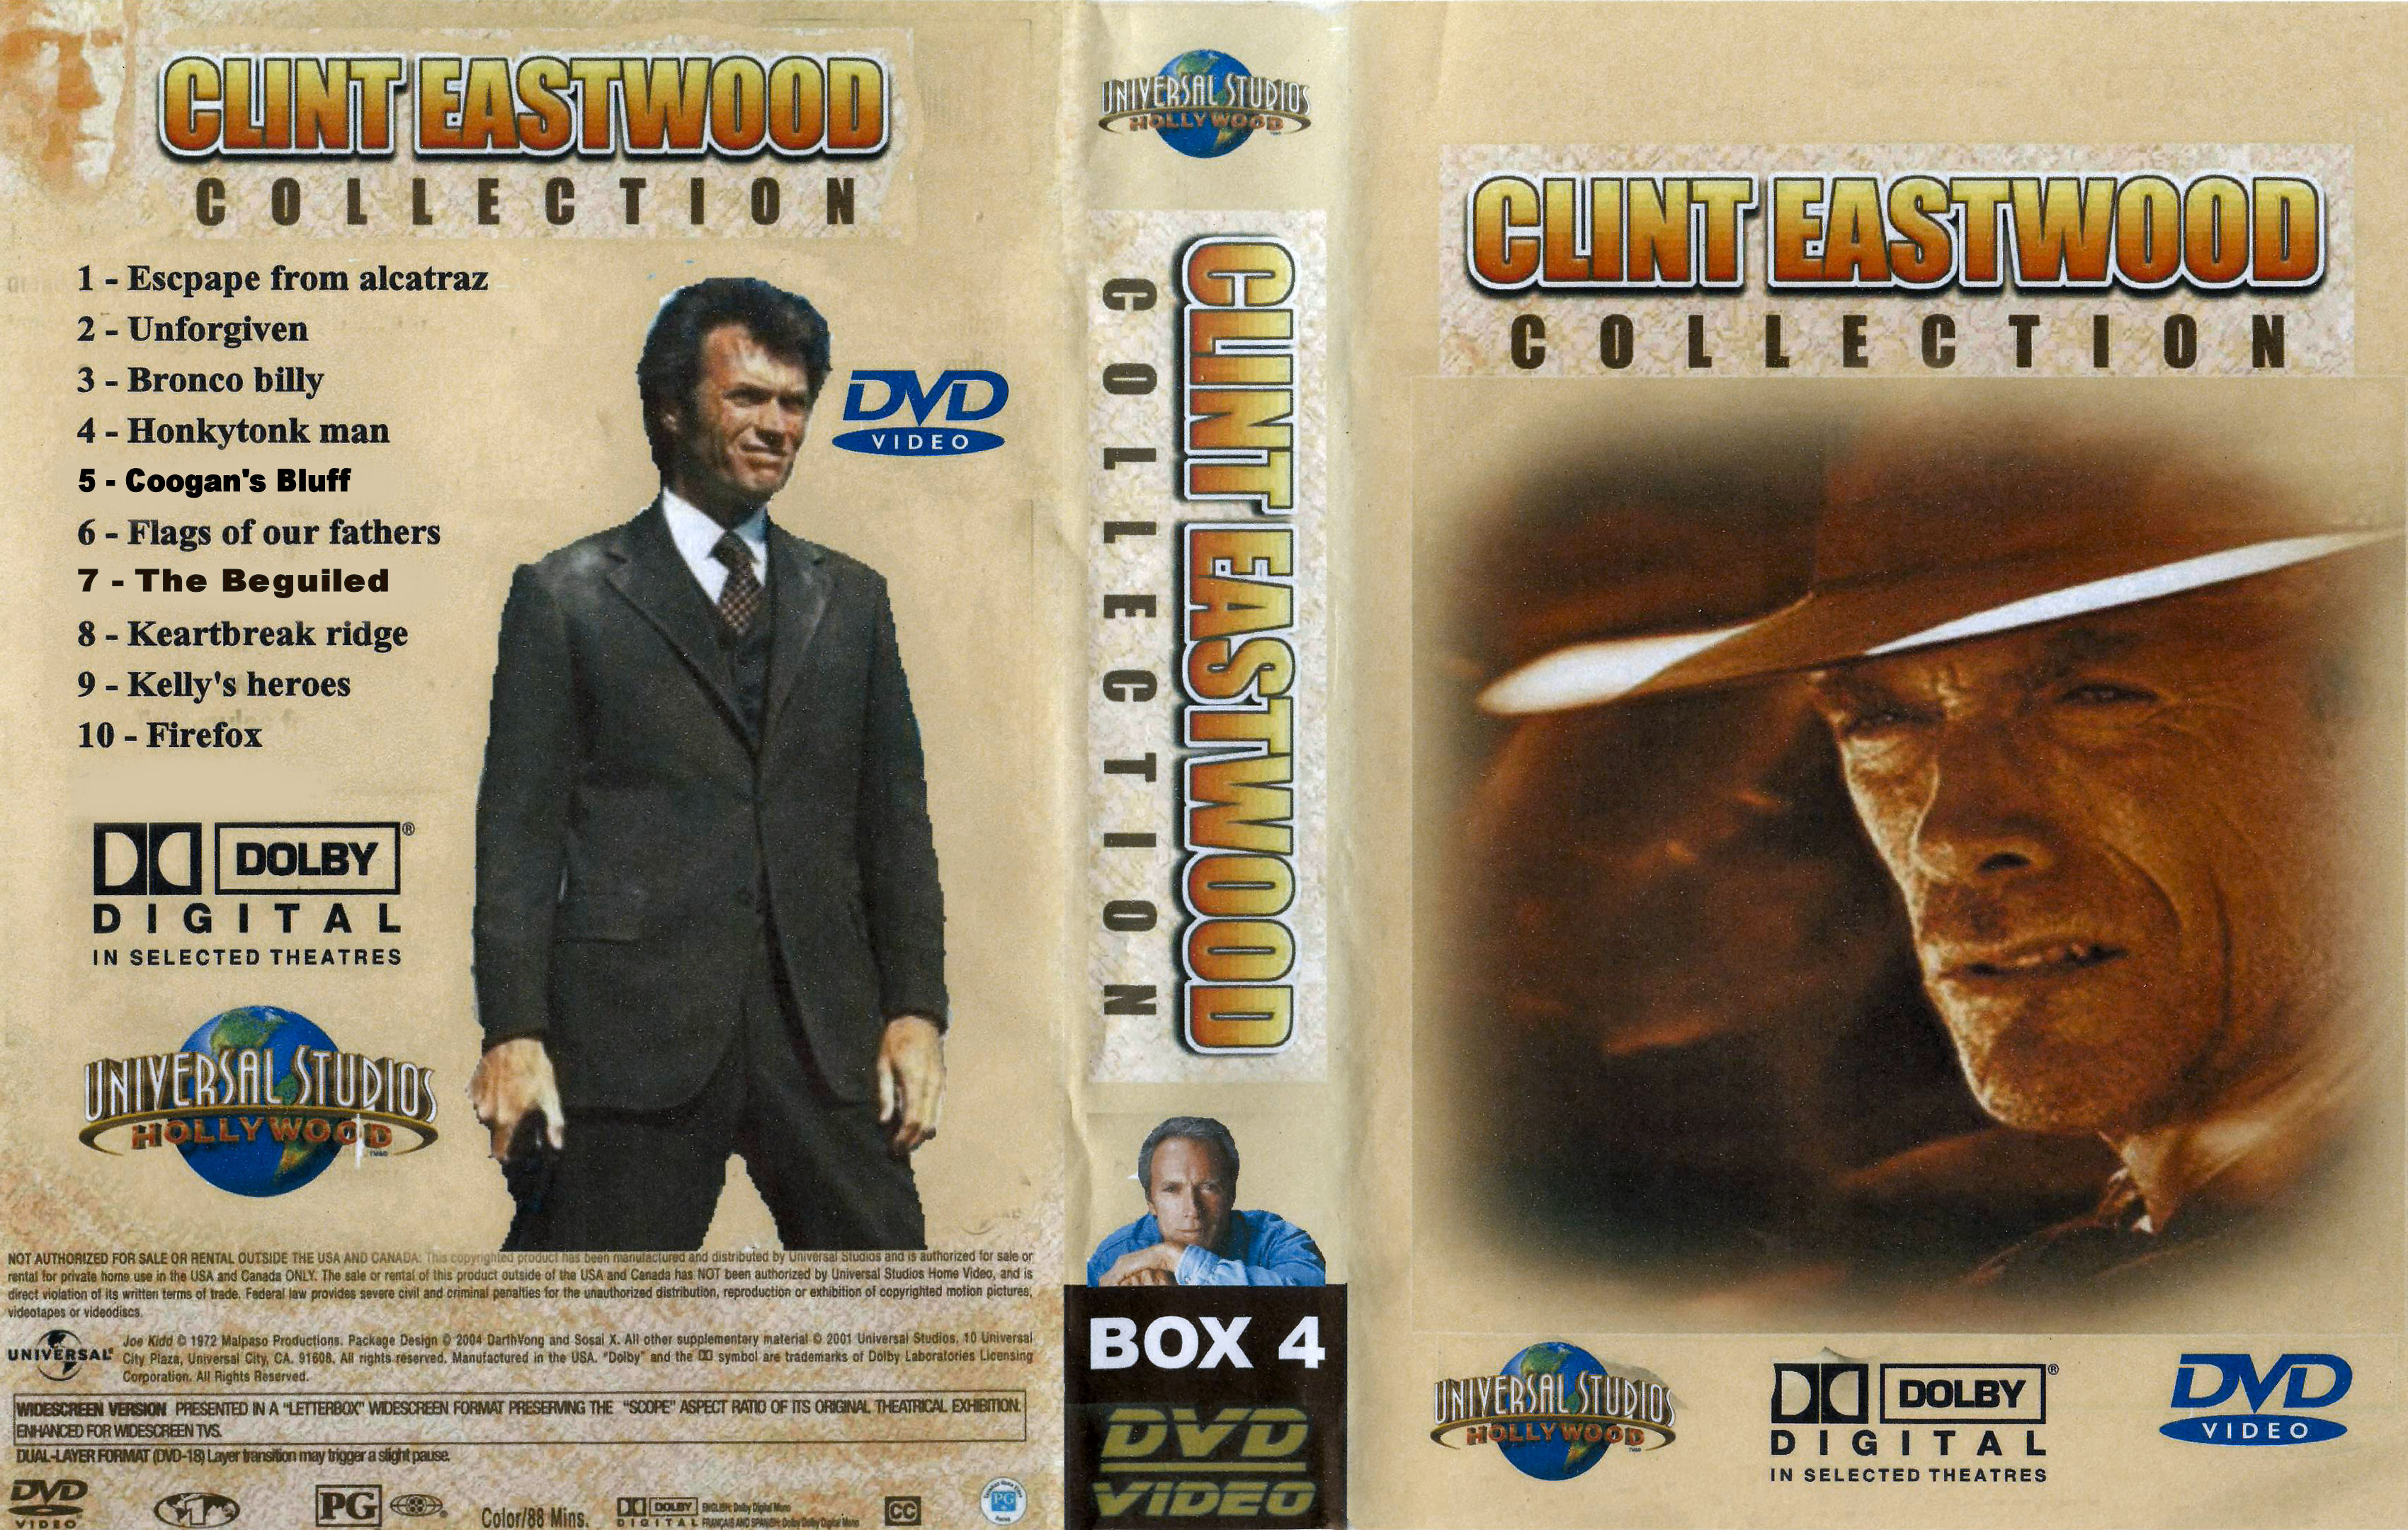 Clint Eastwood Collectie Box 4 DvD 10 Van 10